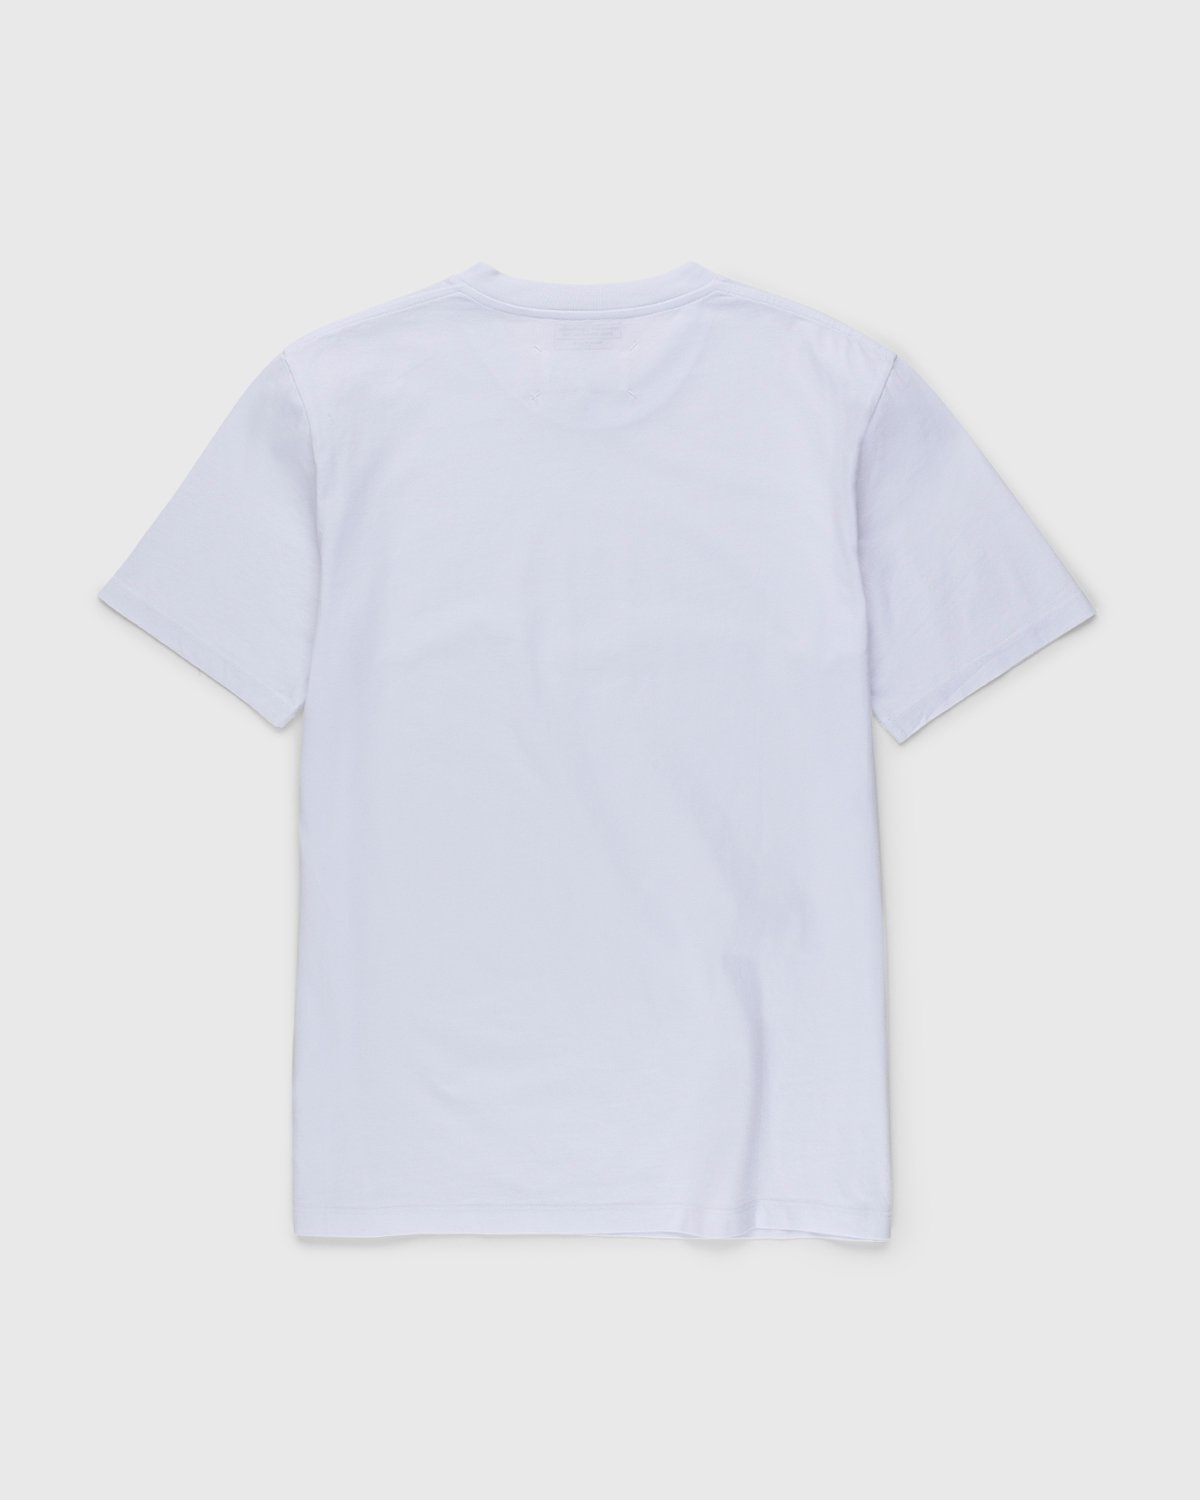 Maison Margiela – Shades of White T-Shirts 3 Pack Multi - T-Shirts - White - Image 3